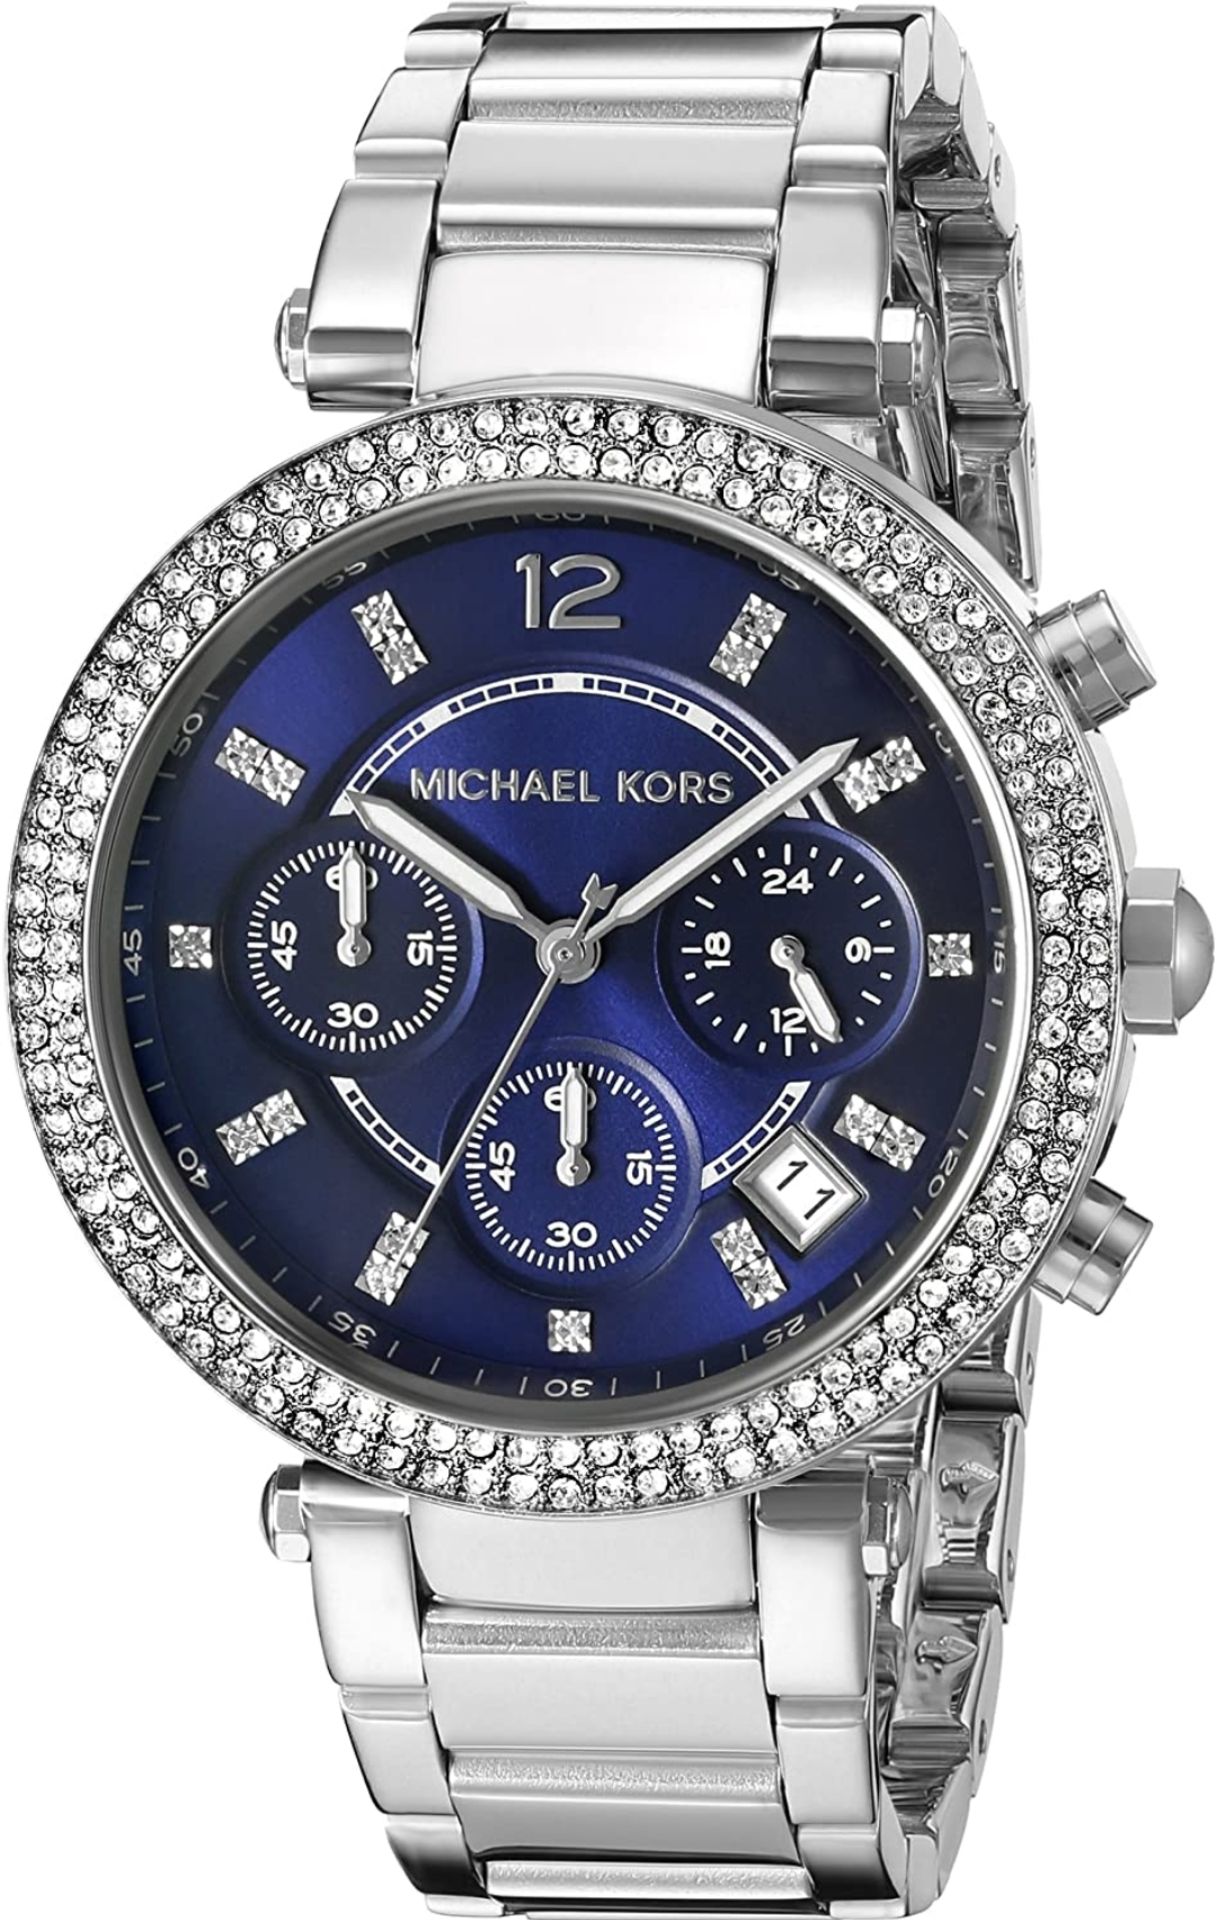 Michael Kors Parker MK6117 Ladies Quartz Chronograph Watch - Image 2 of 6